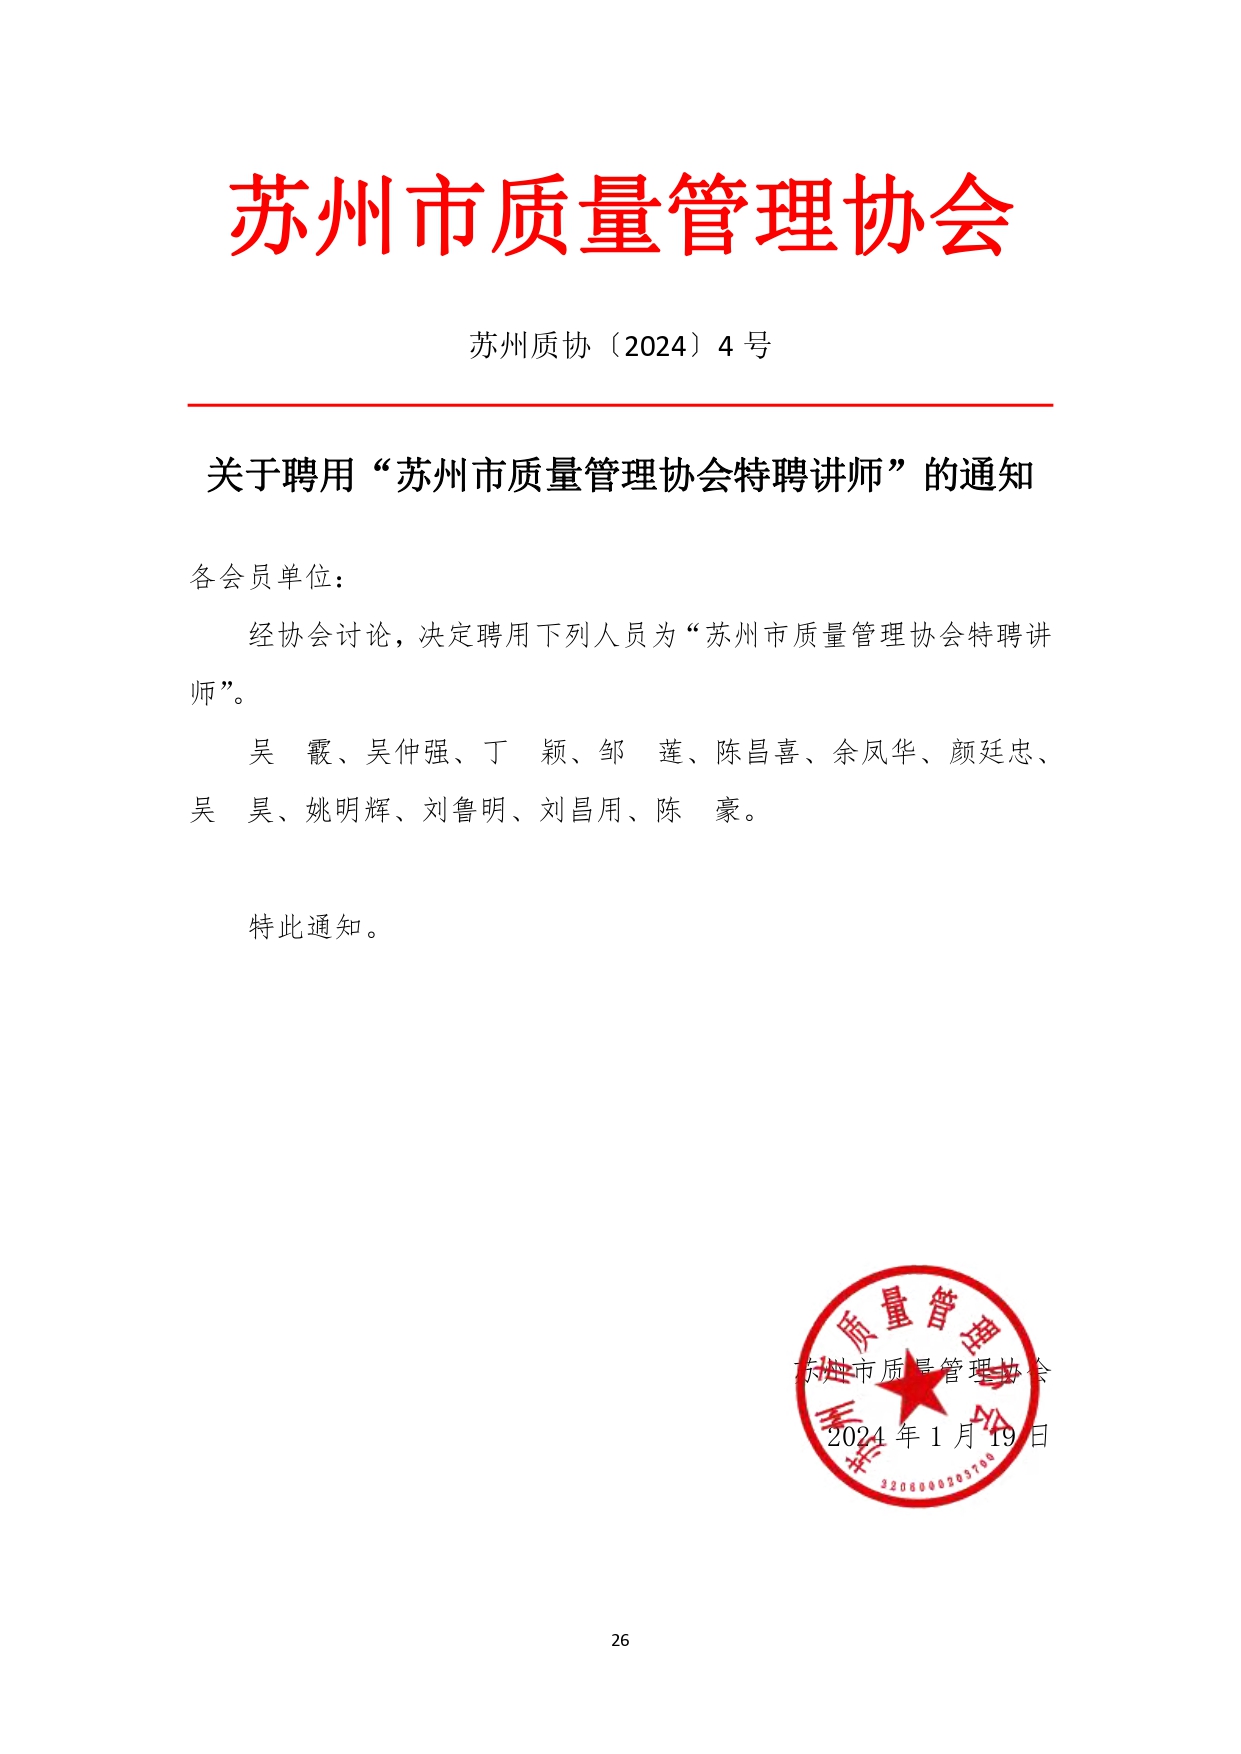 苏州市质量管理协会三届四次会员代表大会文件汇编（1月16日打印版） (修改版)_page-0028.jpg